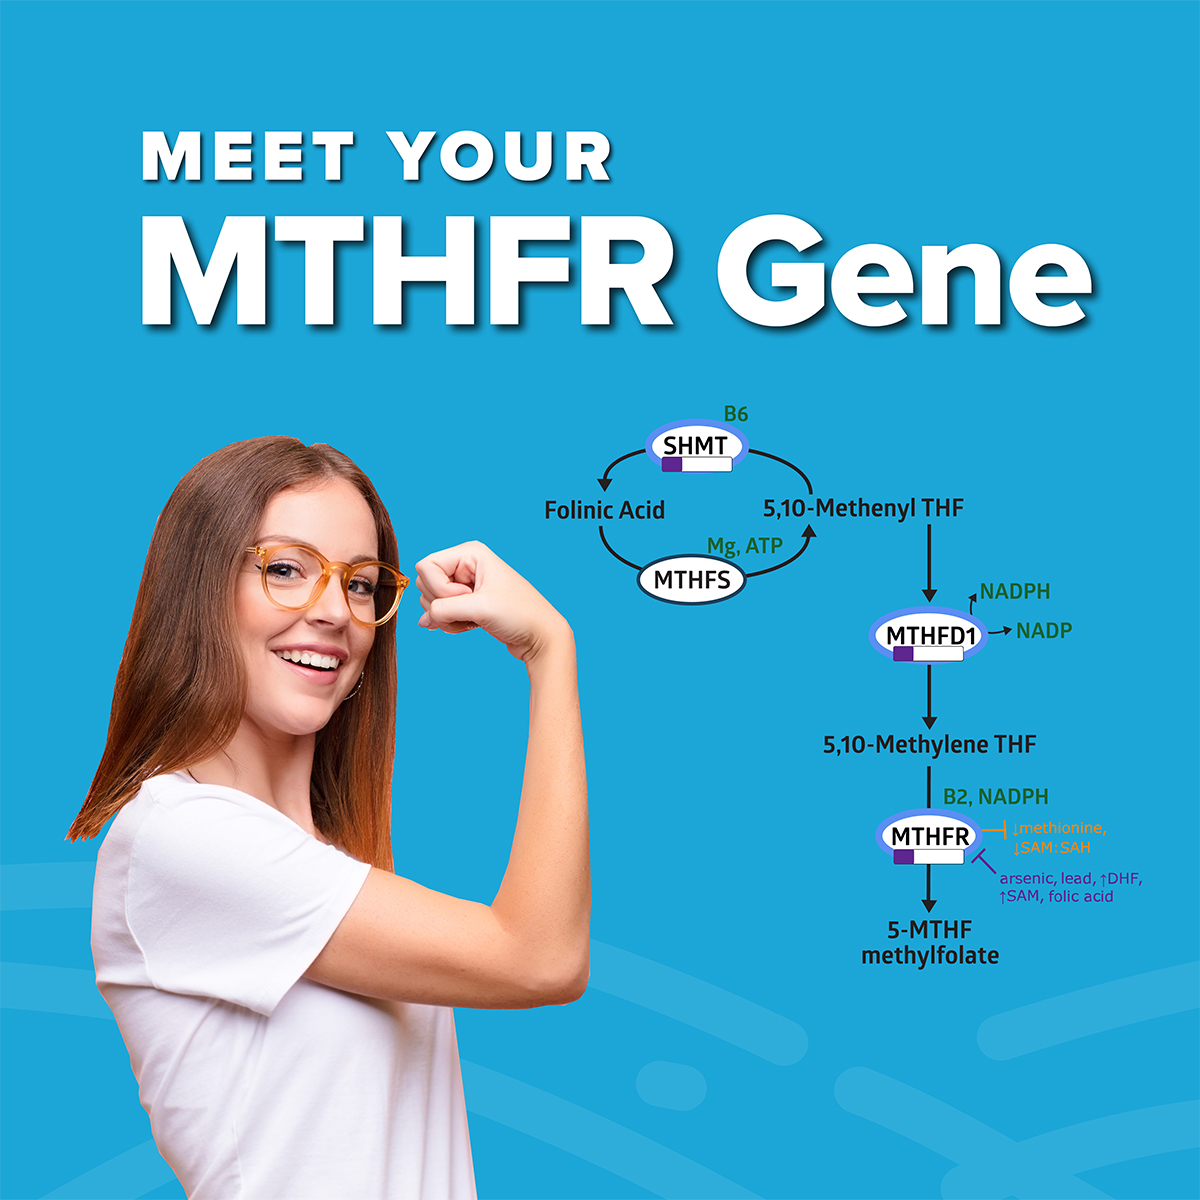 Meet-Your-MTHFR-Gene